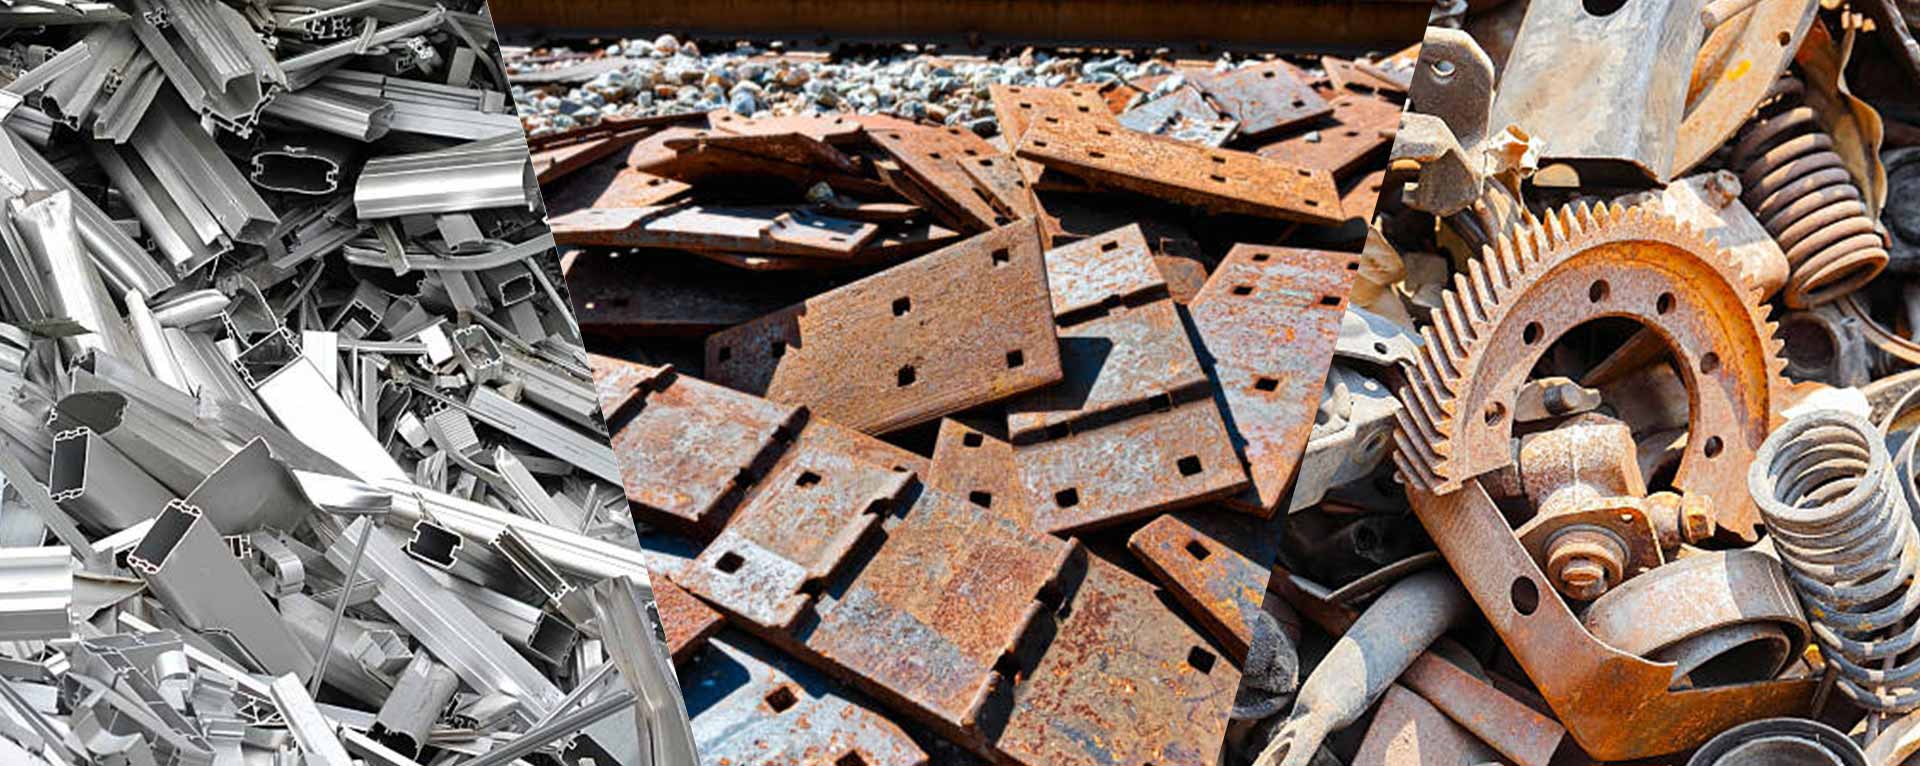 bulk scrap metal buyers in chennai